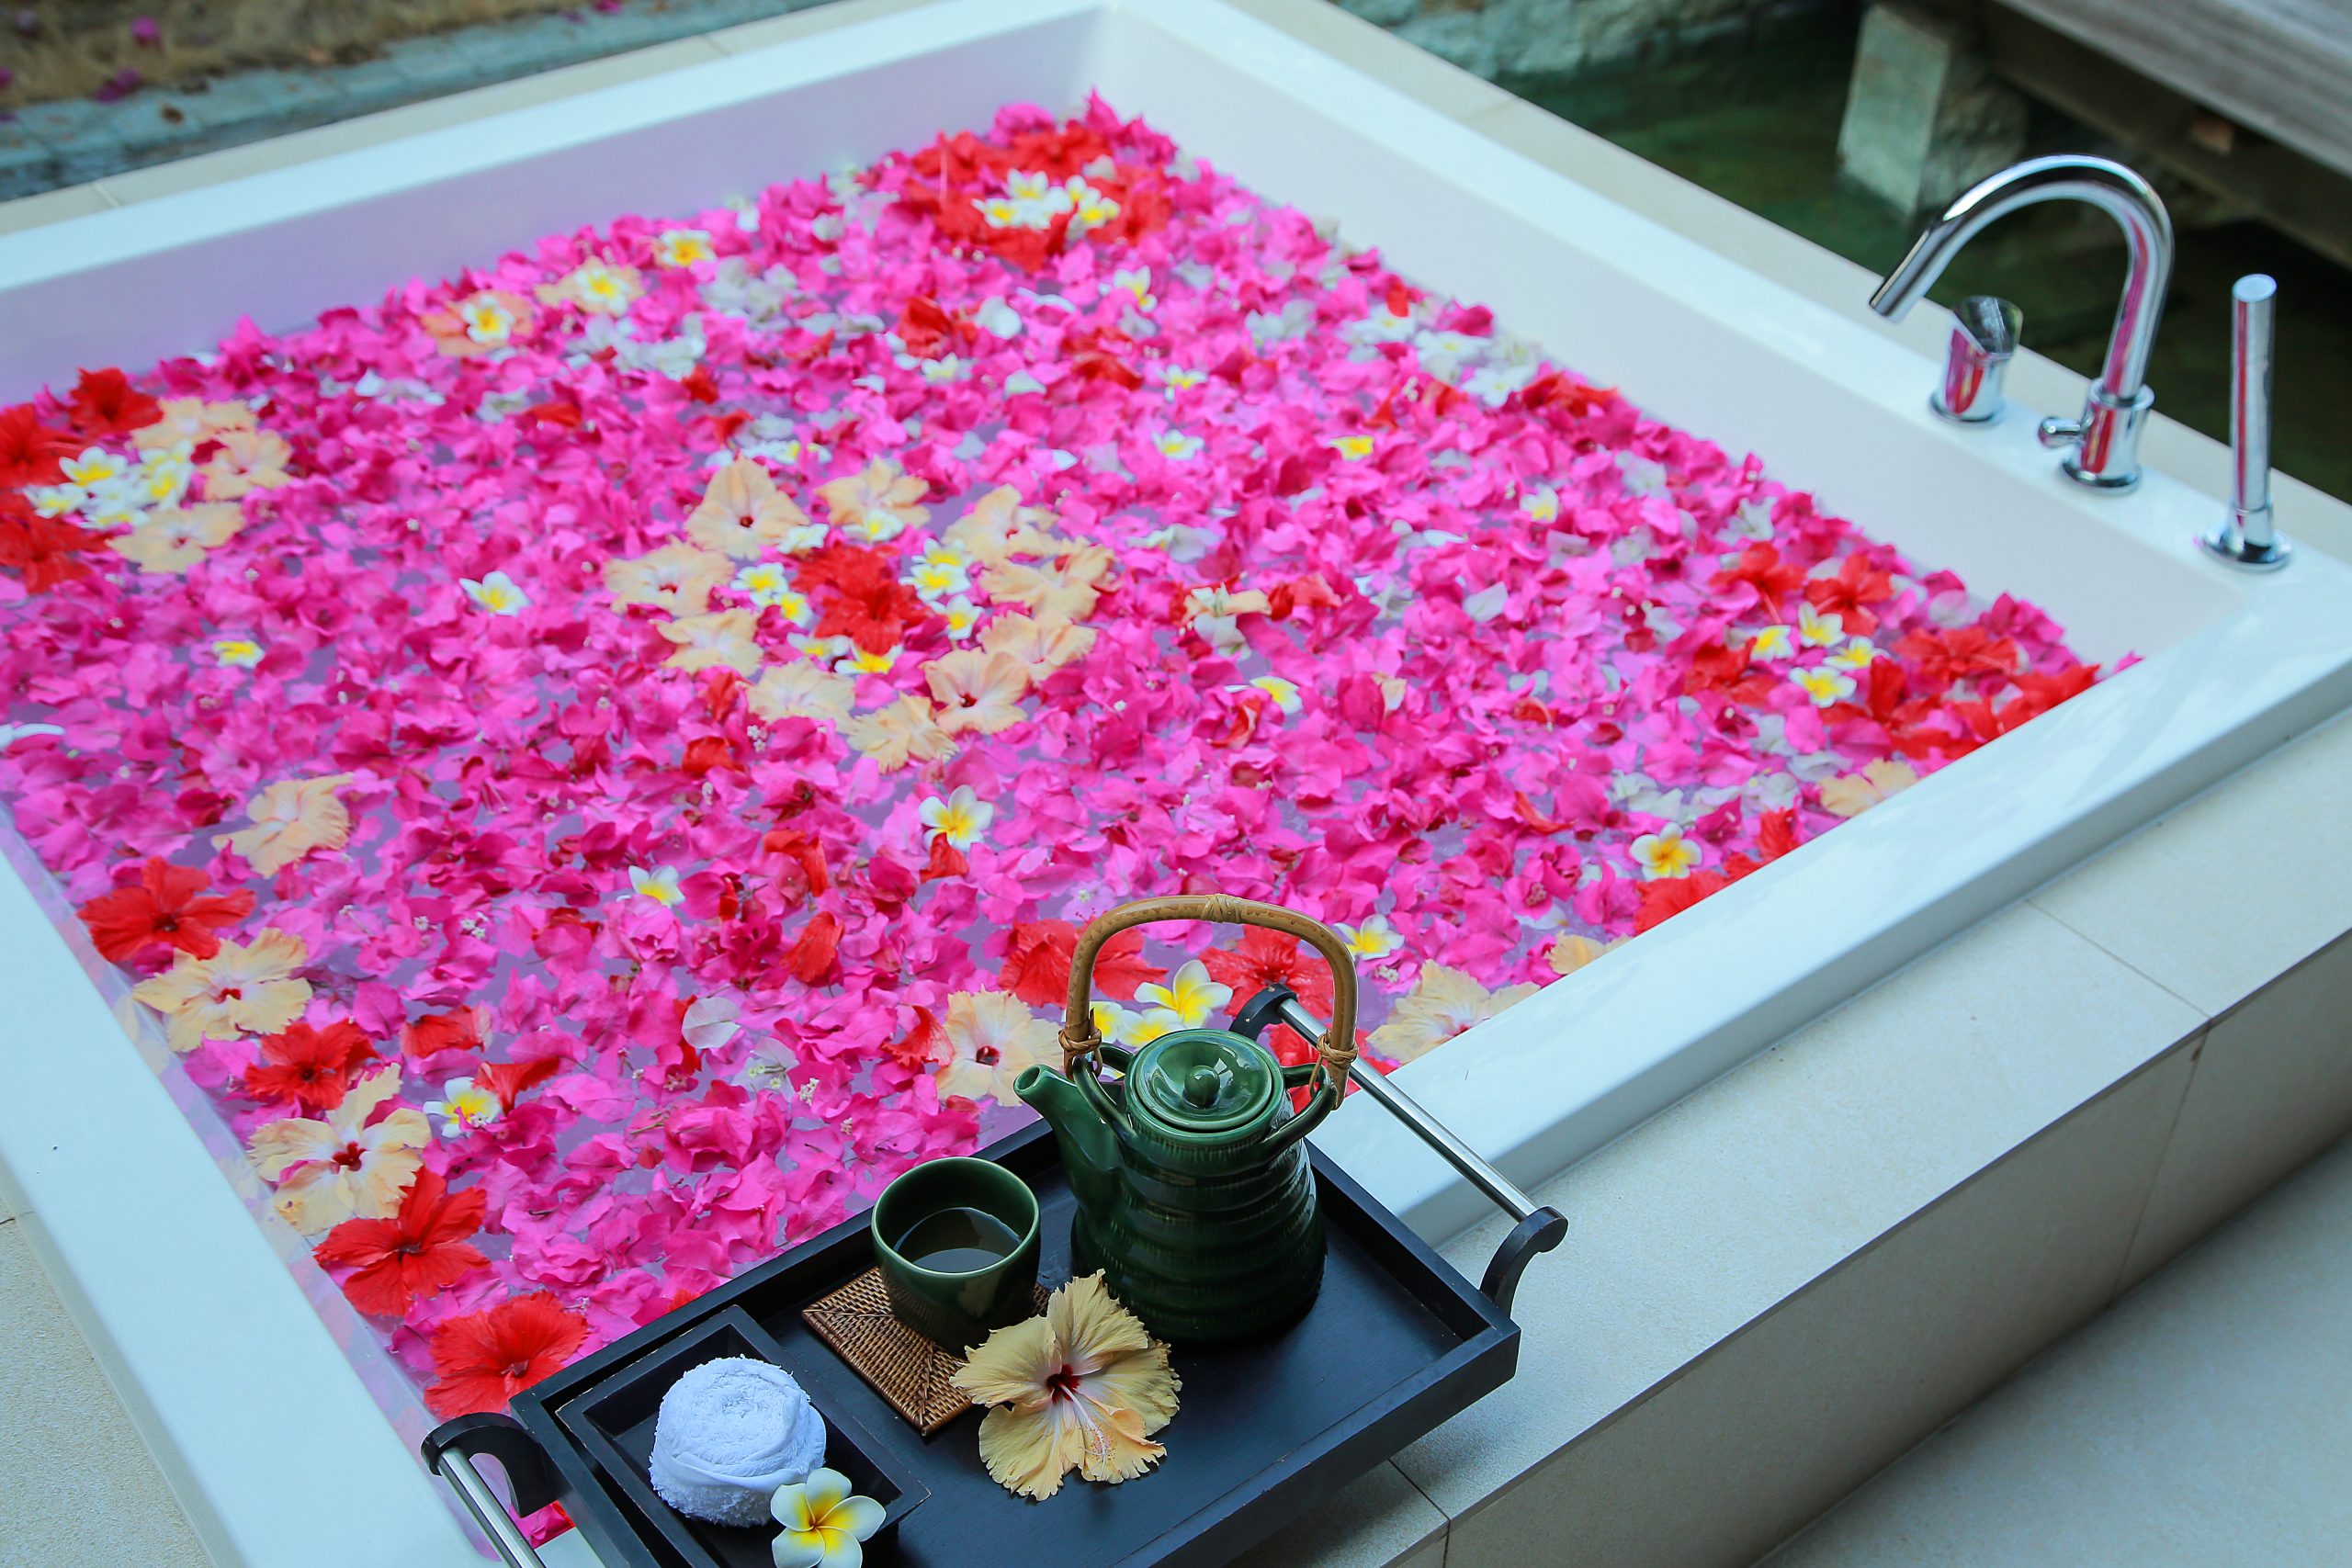 HBR_Spa_Flower_Bath